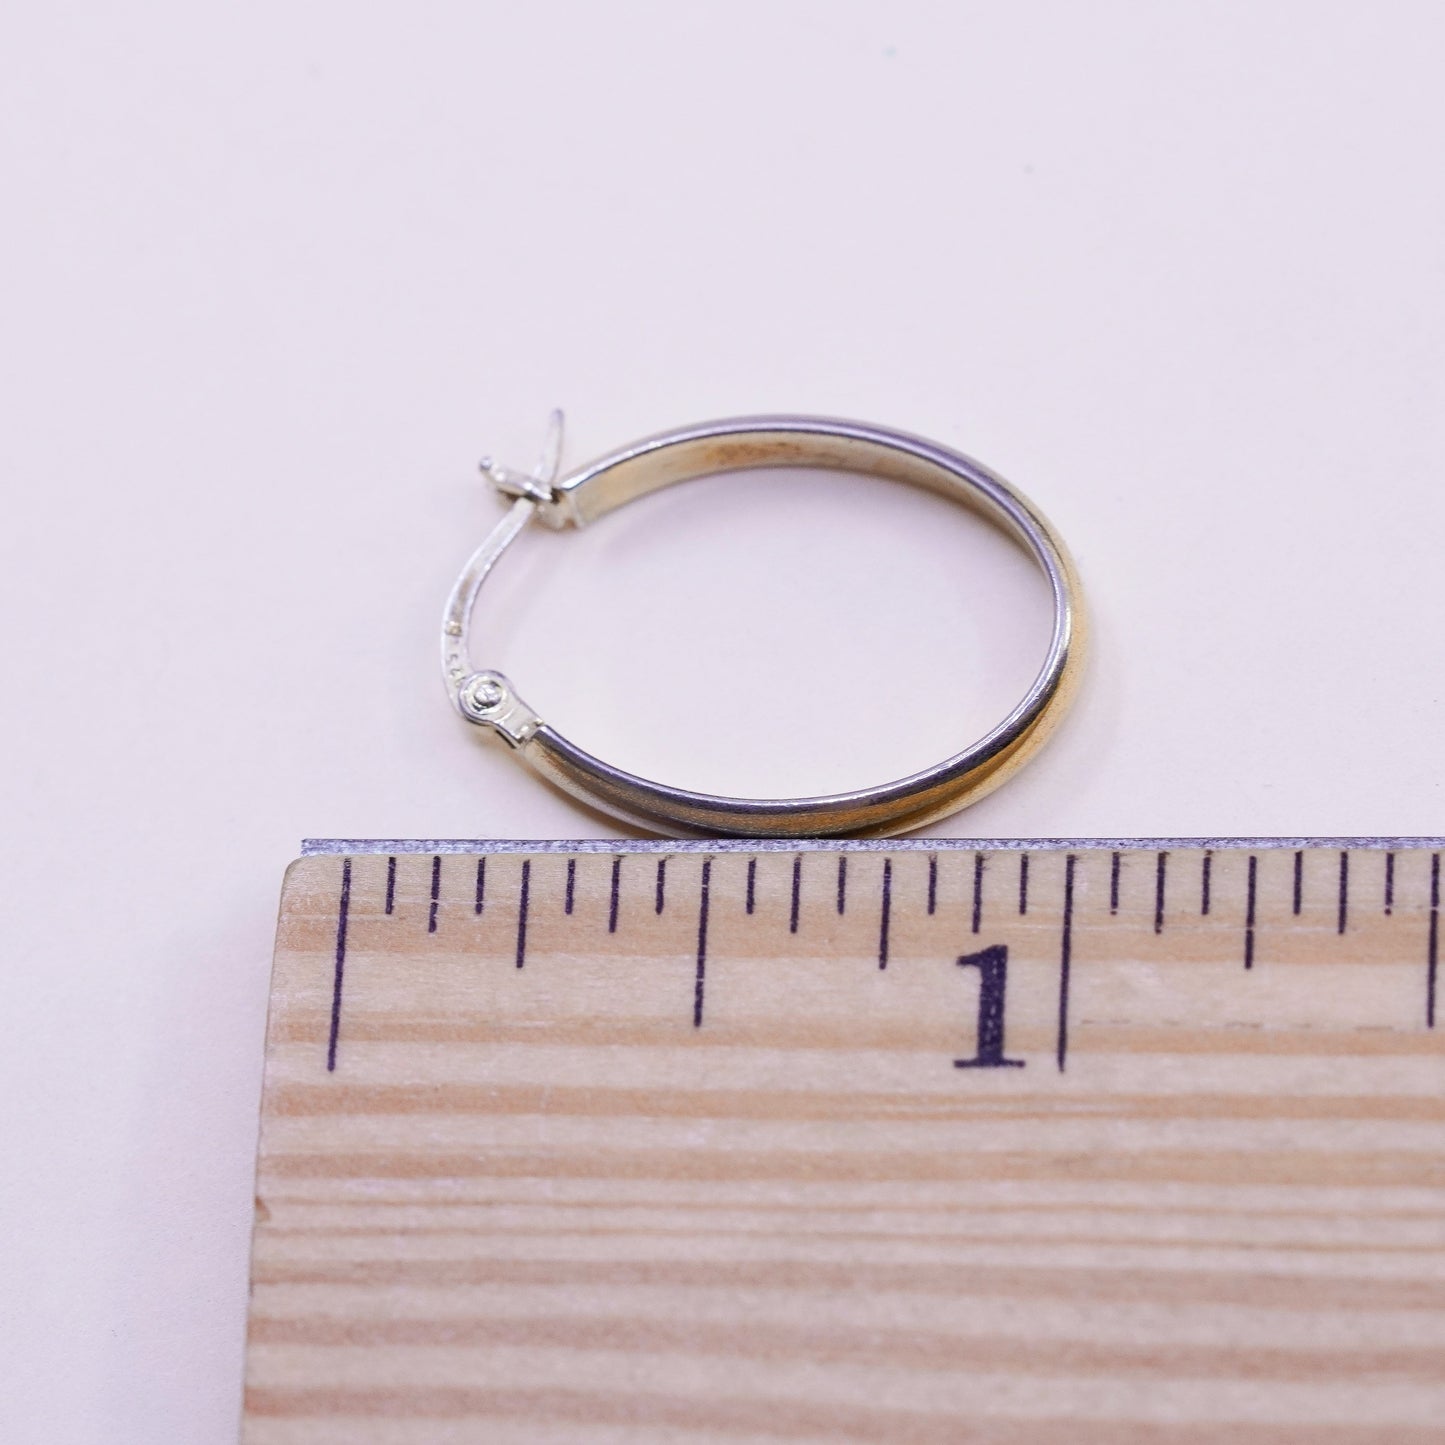 0.75”, vermeil gold over sterling silver loop earrings, minimalist, 925 hoops